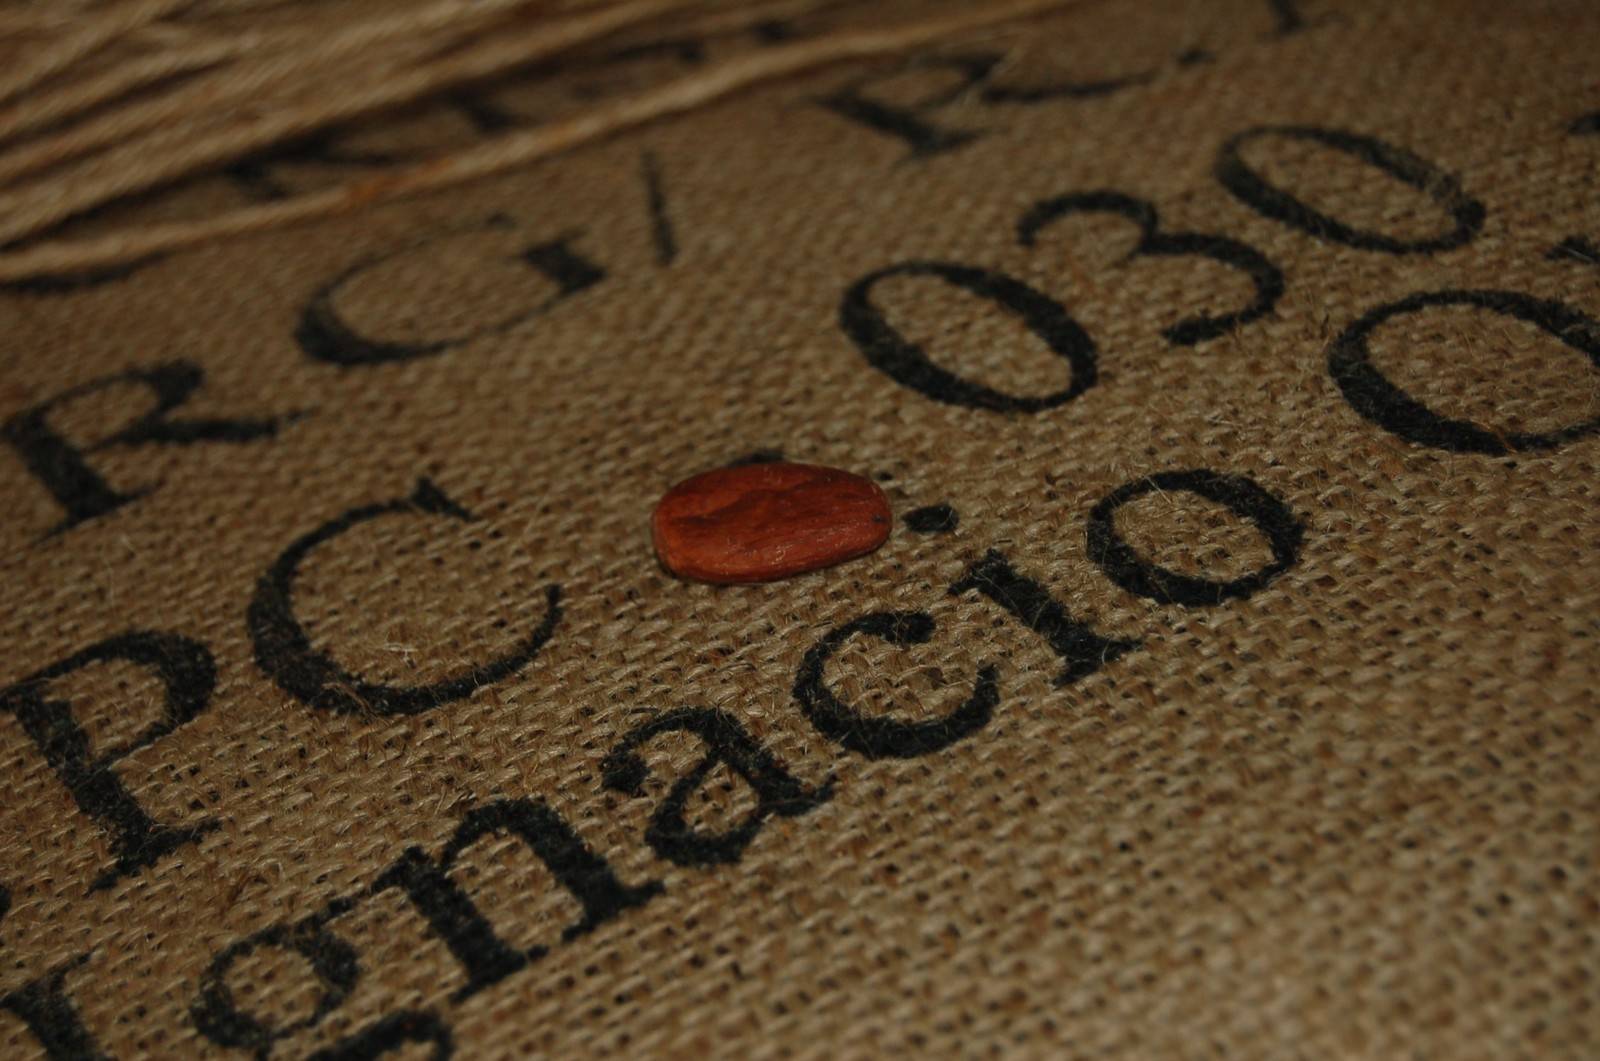 Kakaobohnen-Säcke